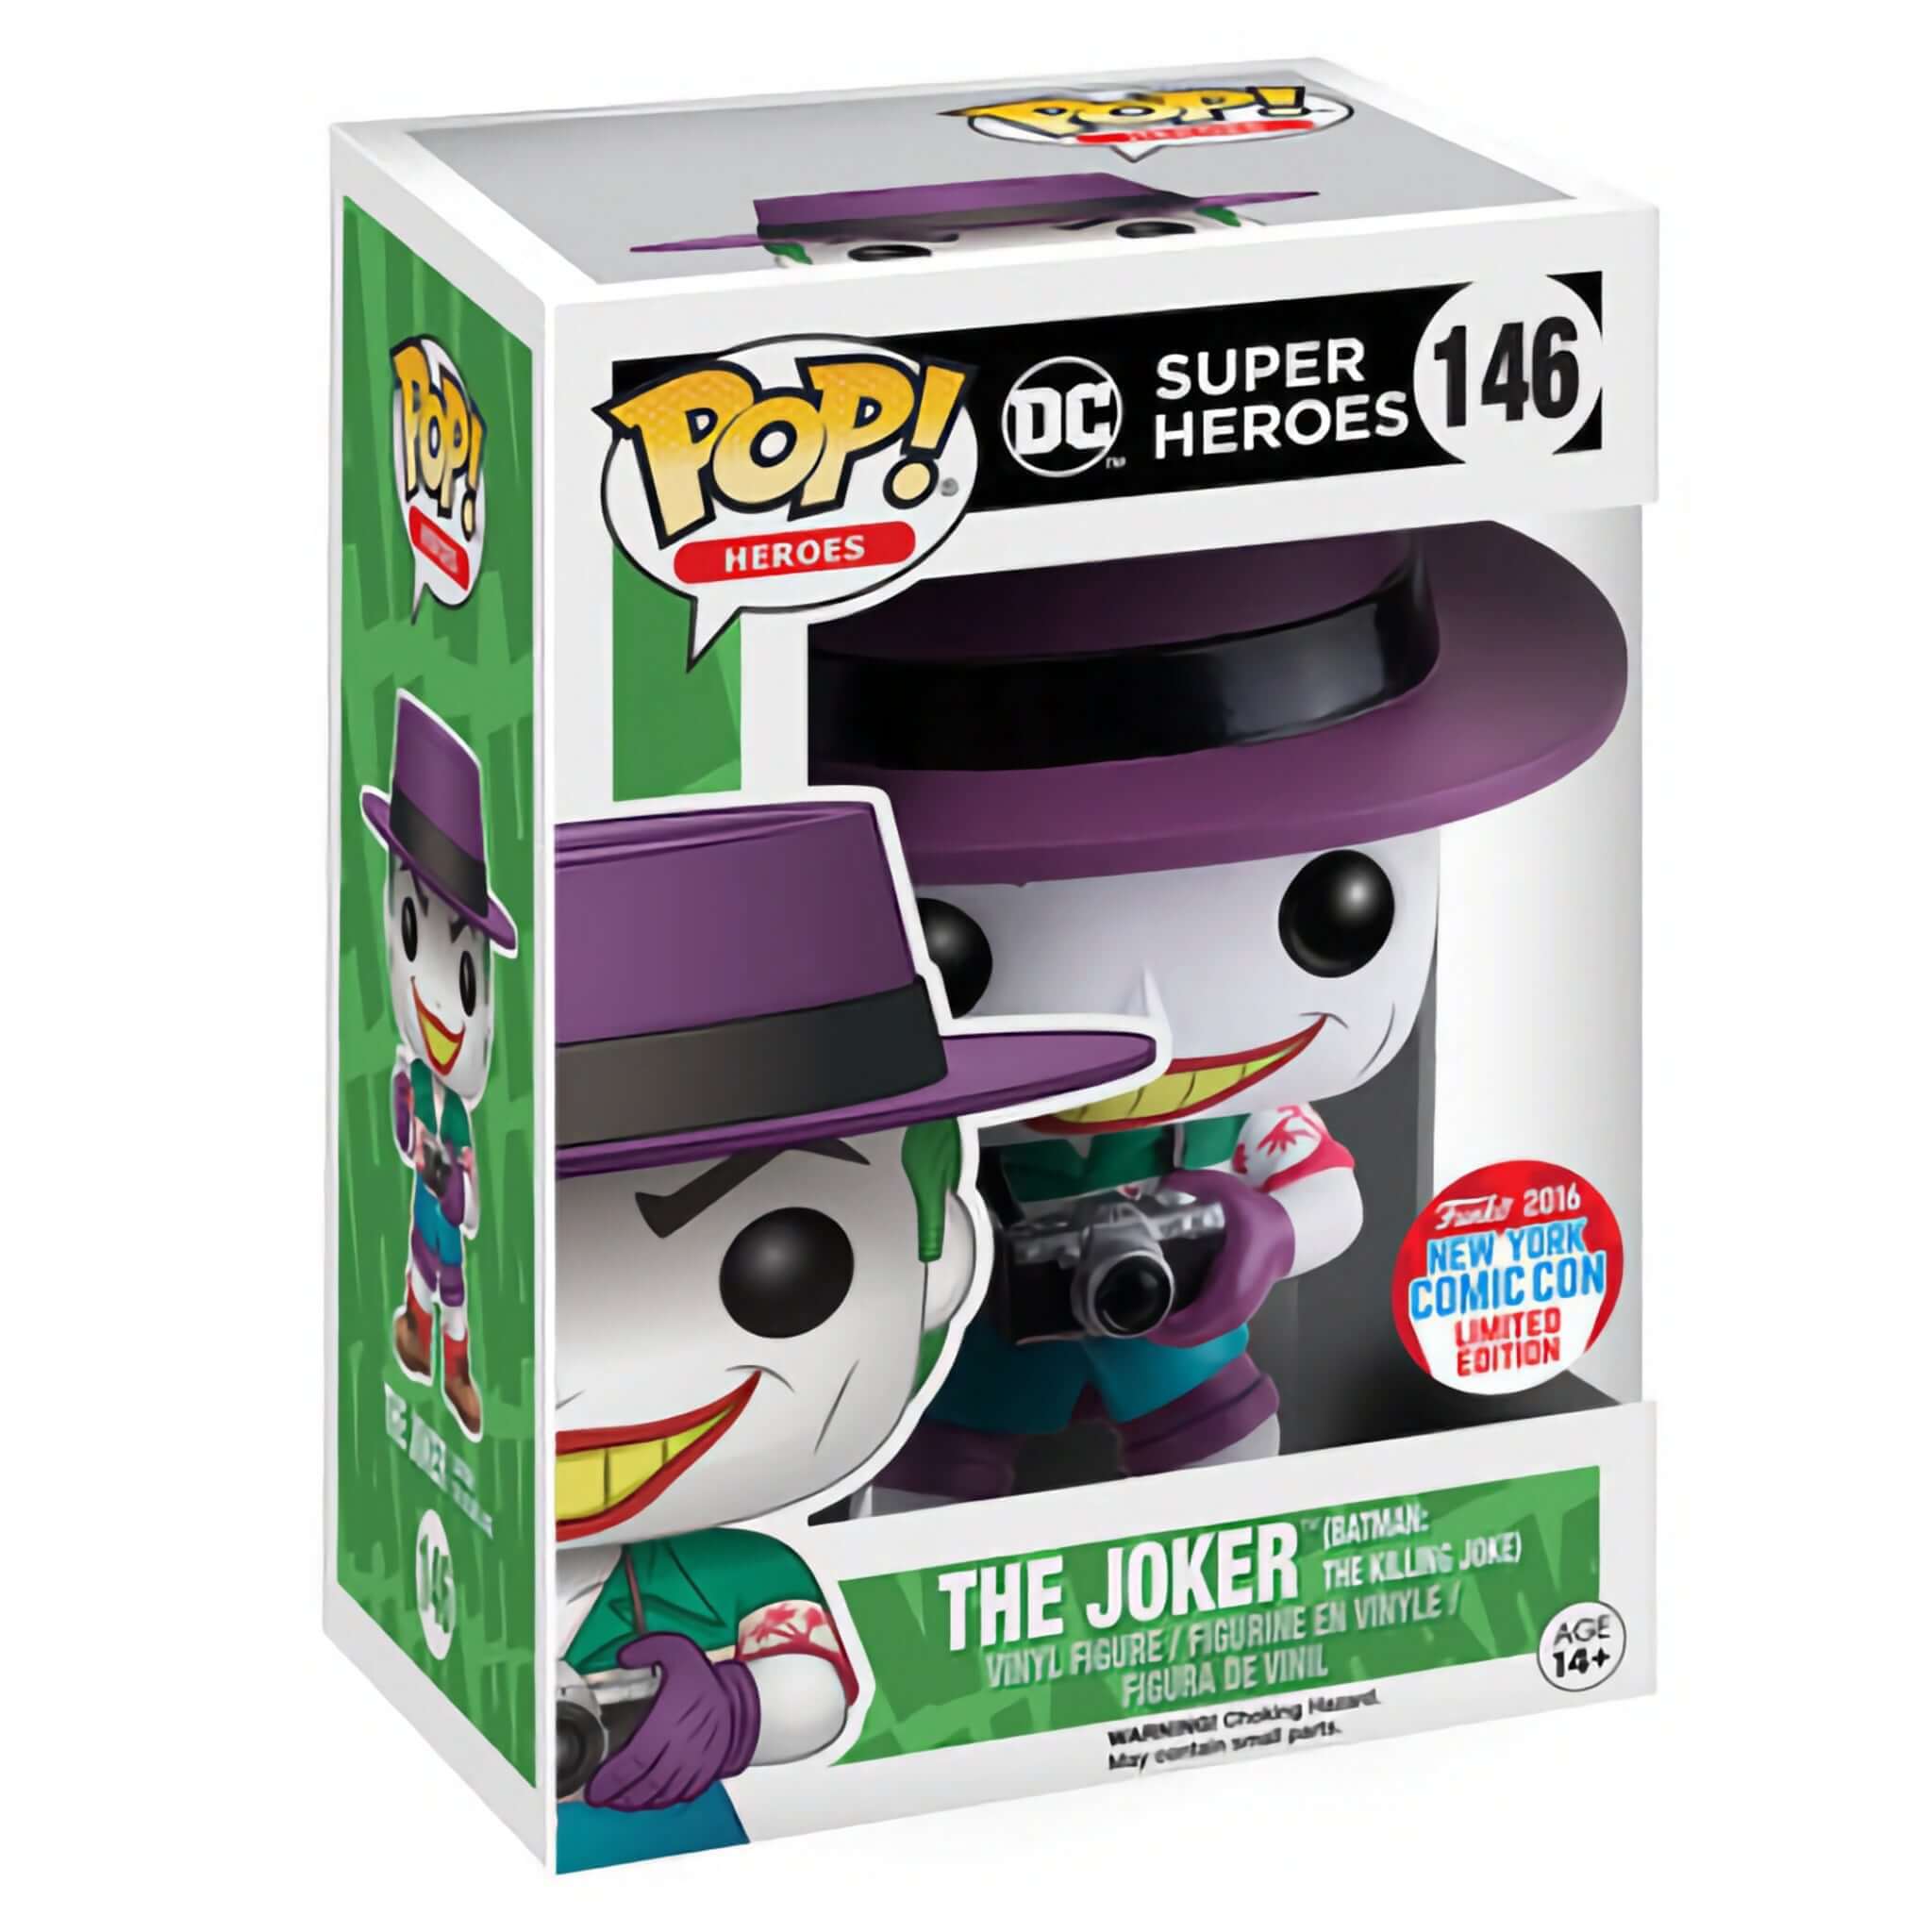 The Joker (Killing Joke) Funko Pop! 2016 NYCC